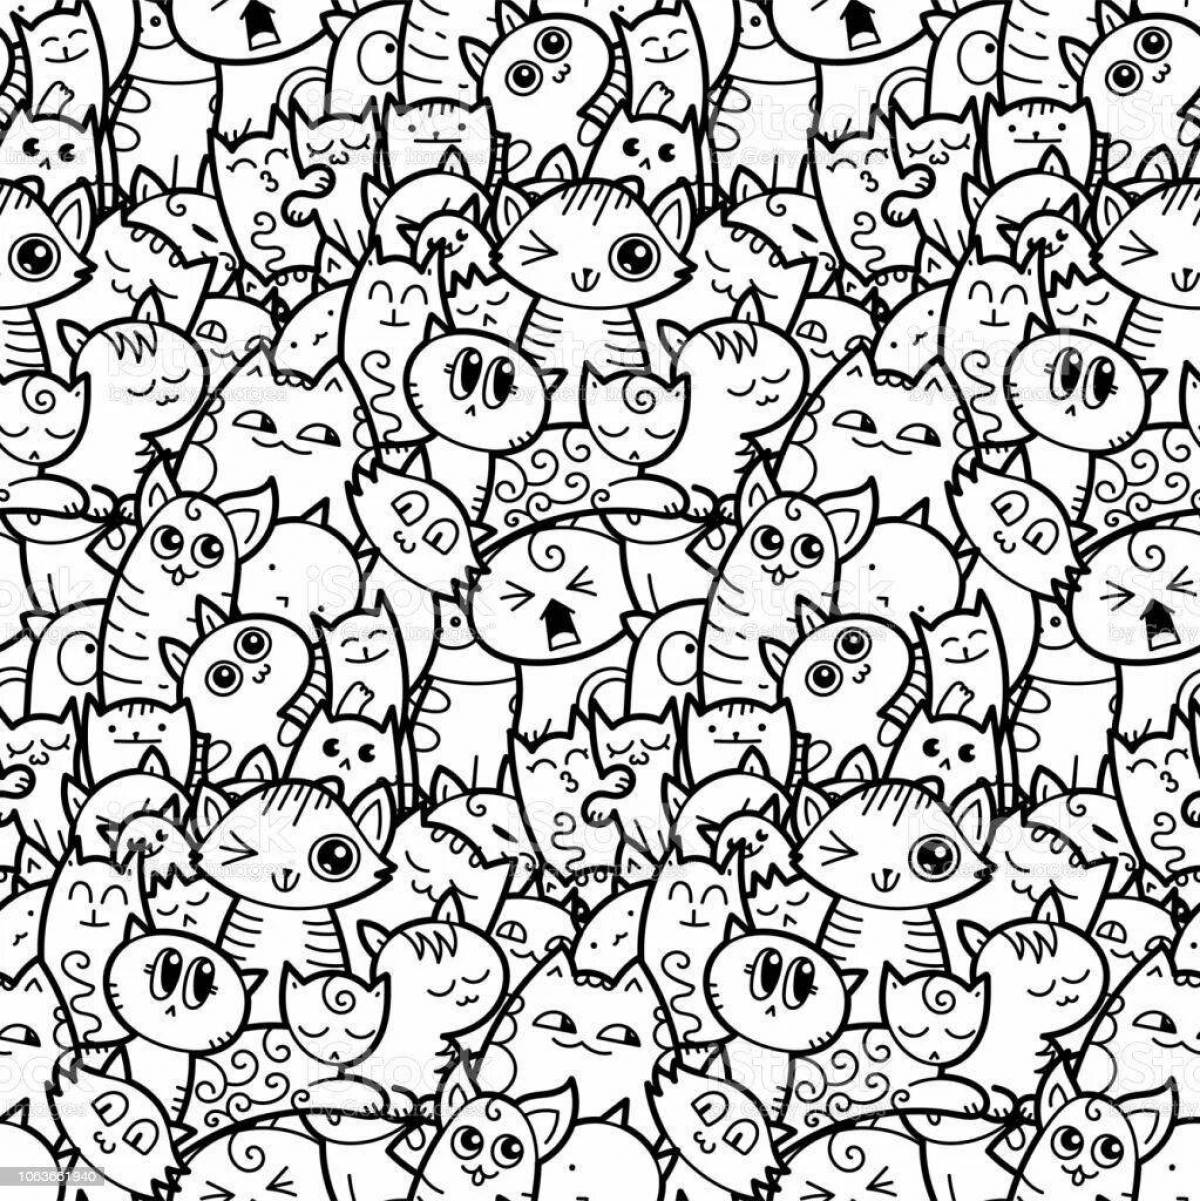 Волшебное множество кошек на одной странице